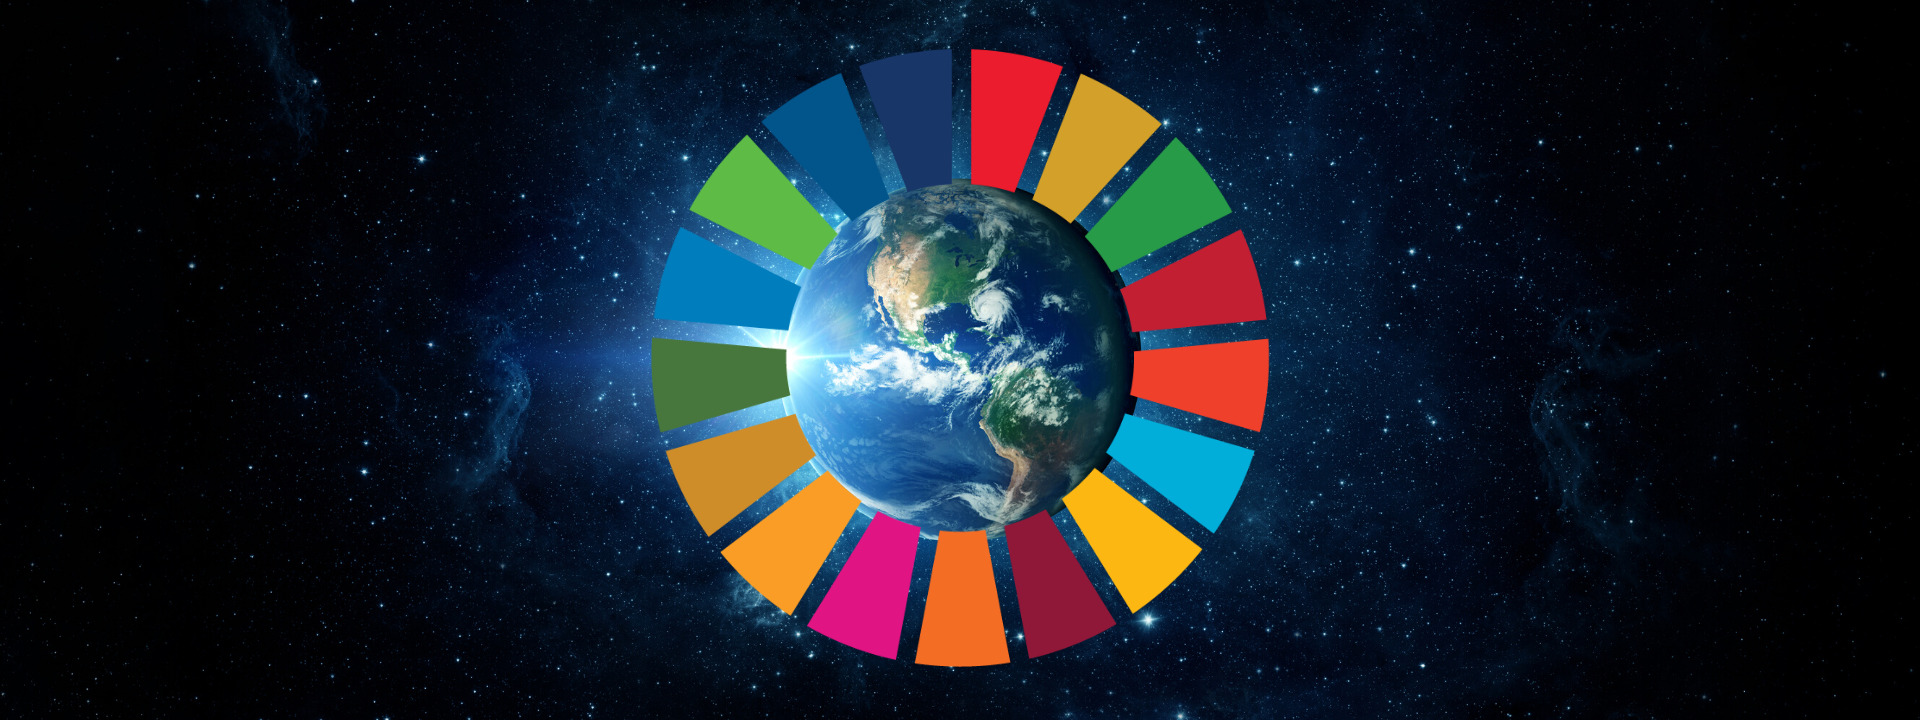 SDGs banner